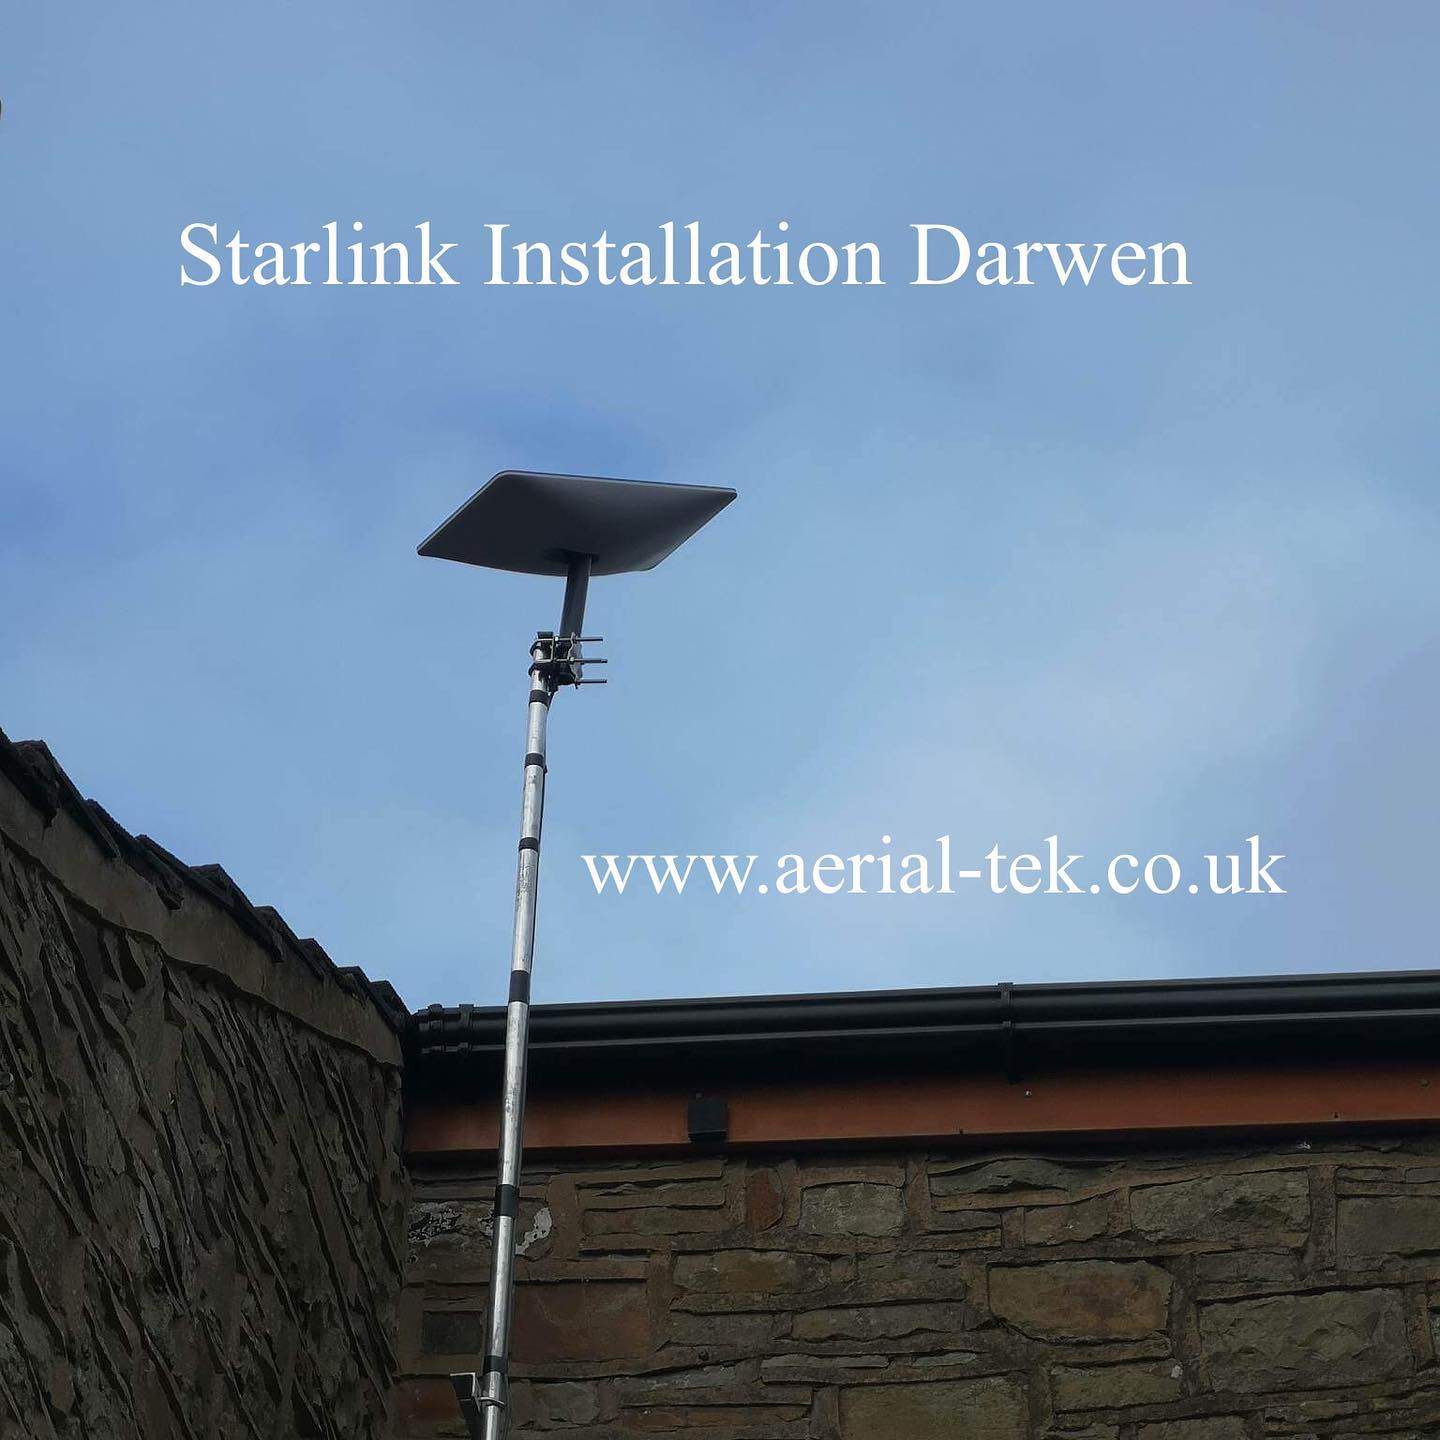 Starlink Installation Darwen